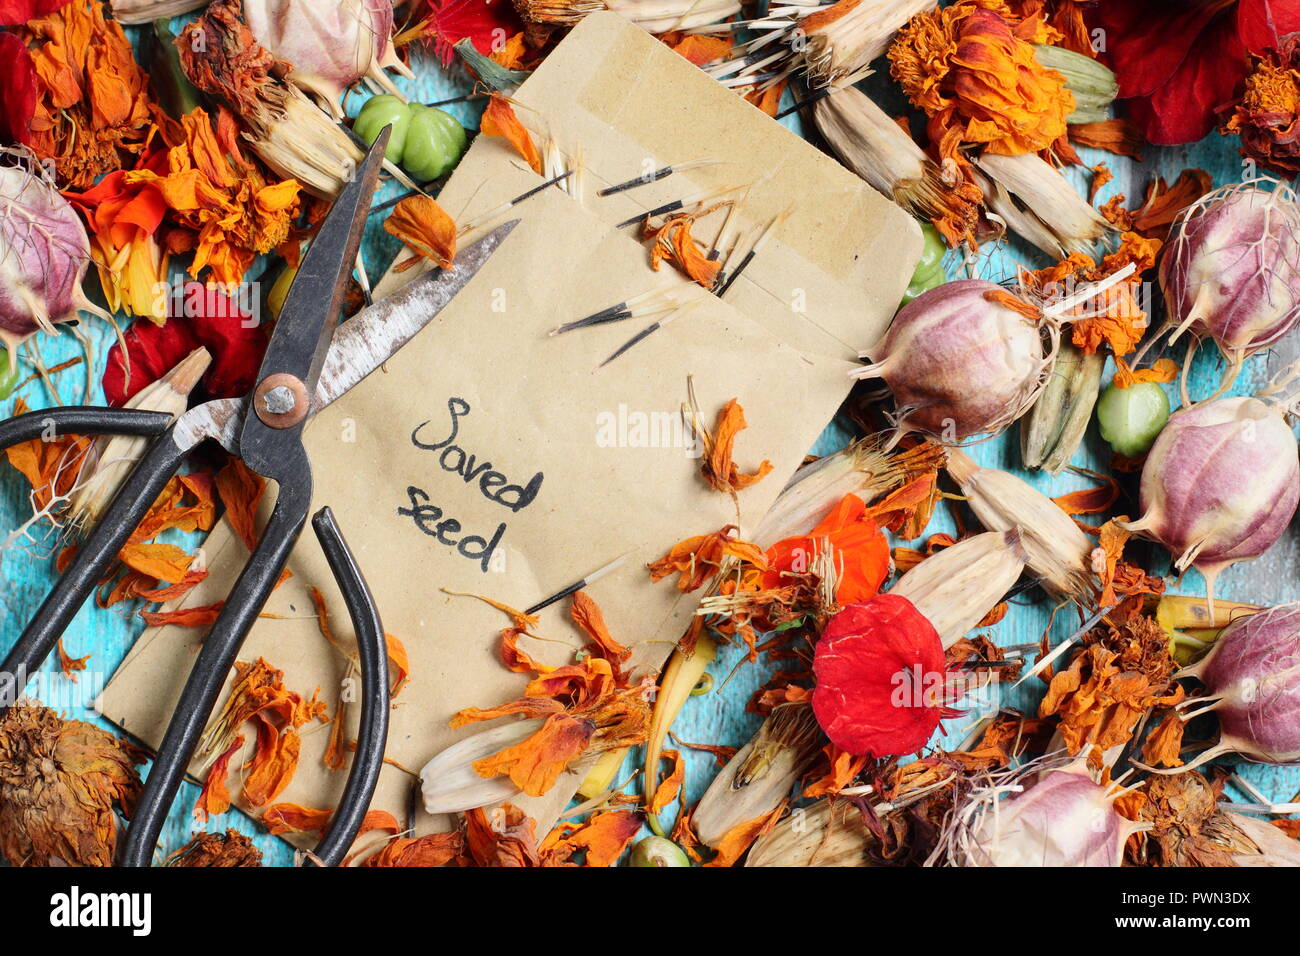 Speichern Blumen Samen in einem Umschlag für zukünftige Pflanzung: Liebe in einem Nebel (Nigella damascena), Kapuzinerkresse (tropaeolum), Sammetblume (Tagetes), Herbst, Großbritannien Stockfoto